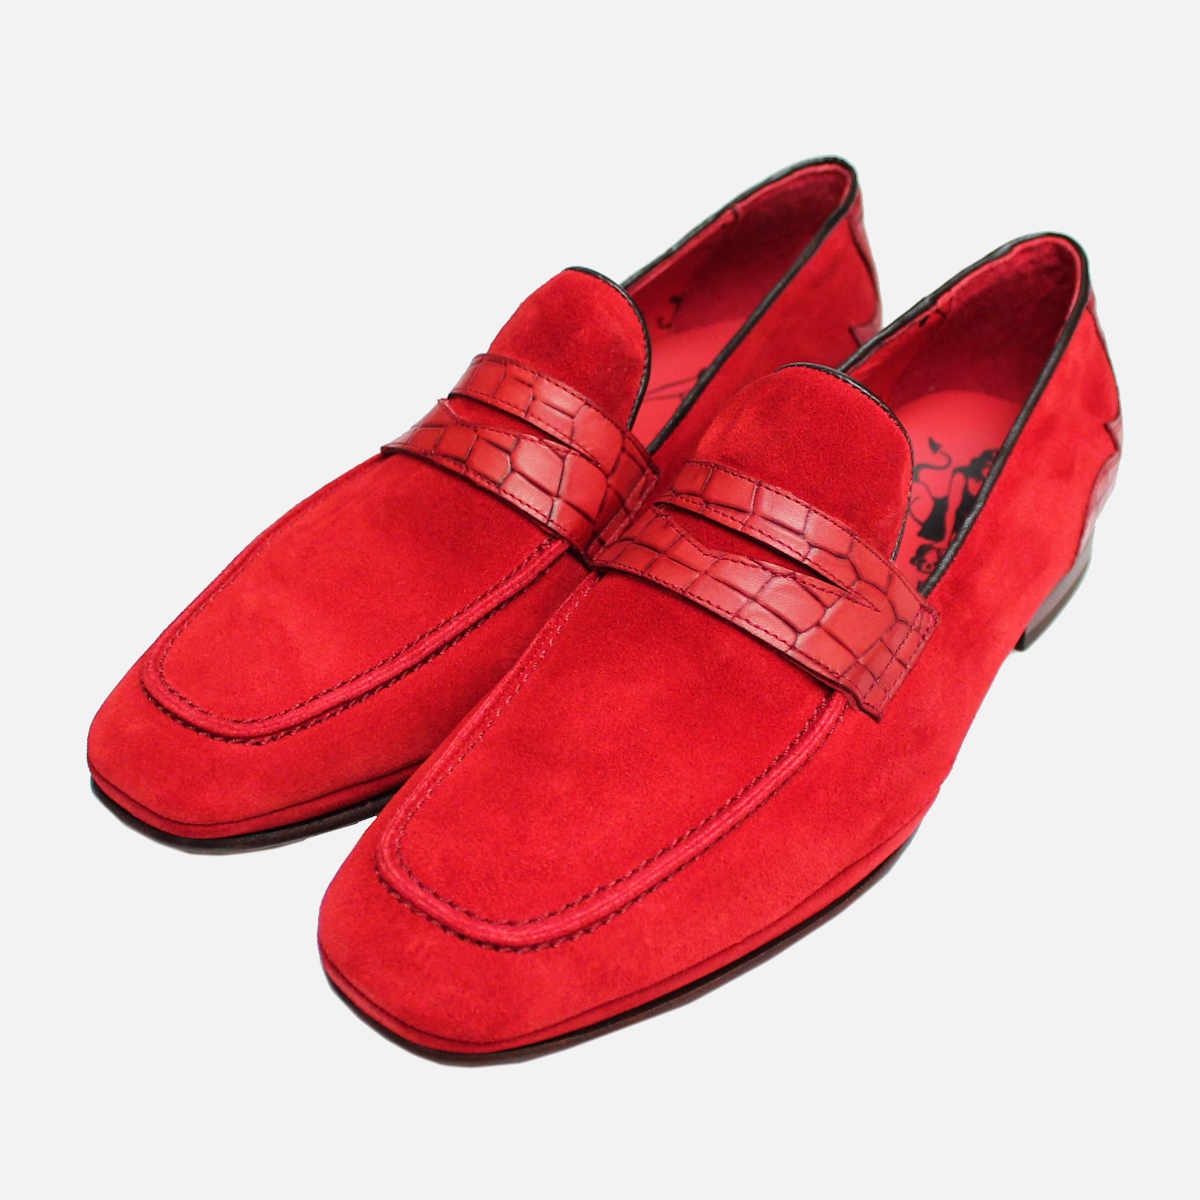 jeffery west shoes ebay